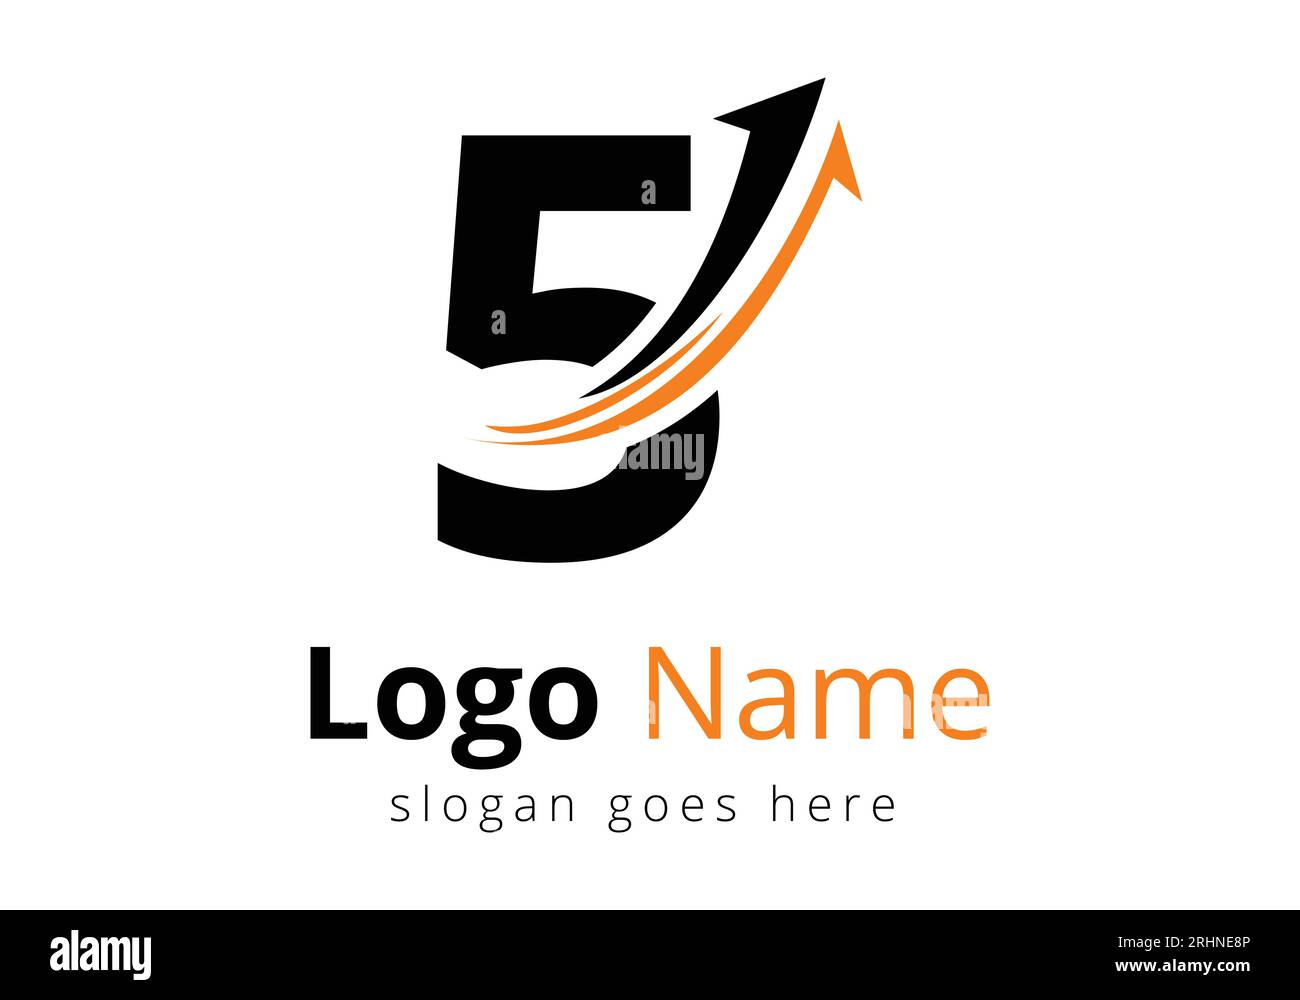 Logo de financement avec concept de 5 lettres. Concept de logo financier ou de réussite. Logo pour l'entreprise comptable et l'identité de l'entreprise Illustration de Vecteur